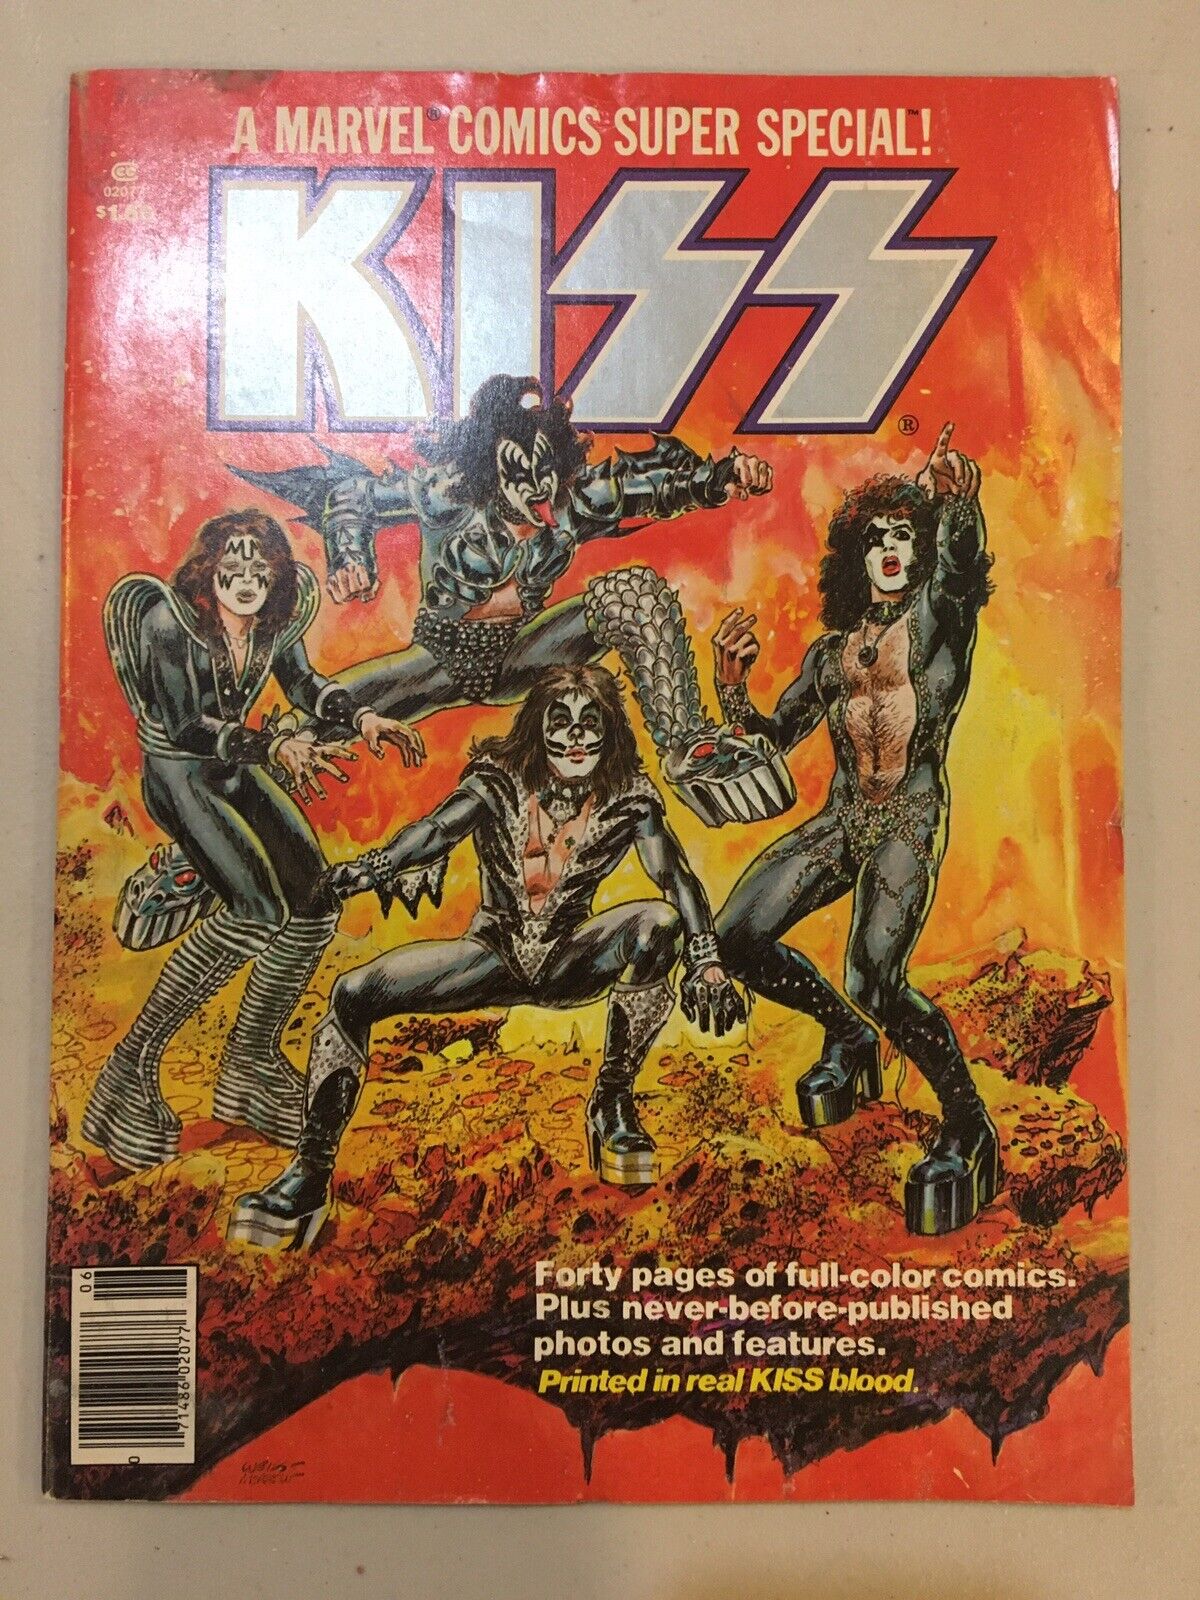 1977 KISS A MARVEL COMICS SUPER SPECIAL VOL-1 #-1 COMIC BOOK, Very Good